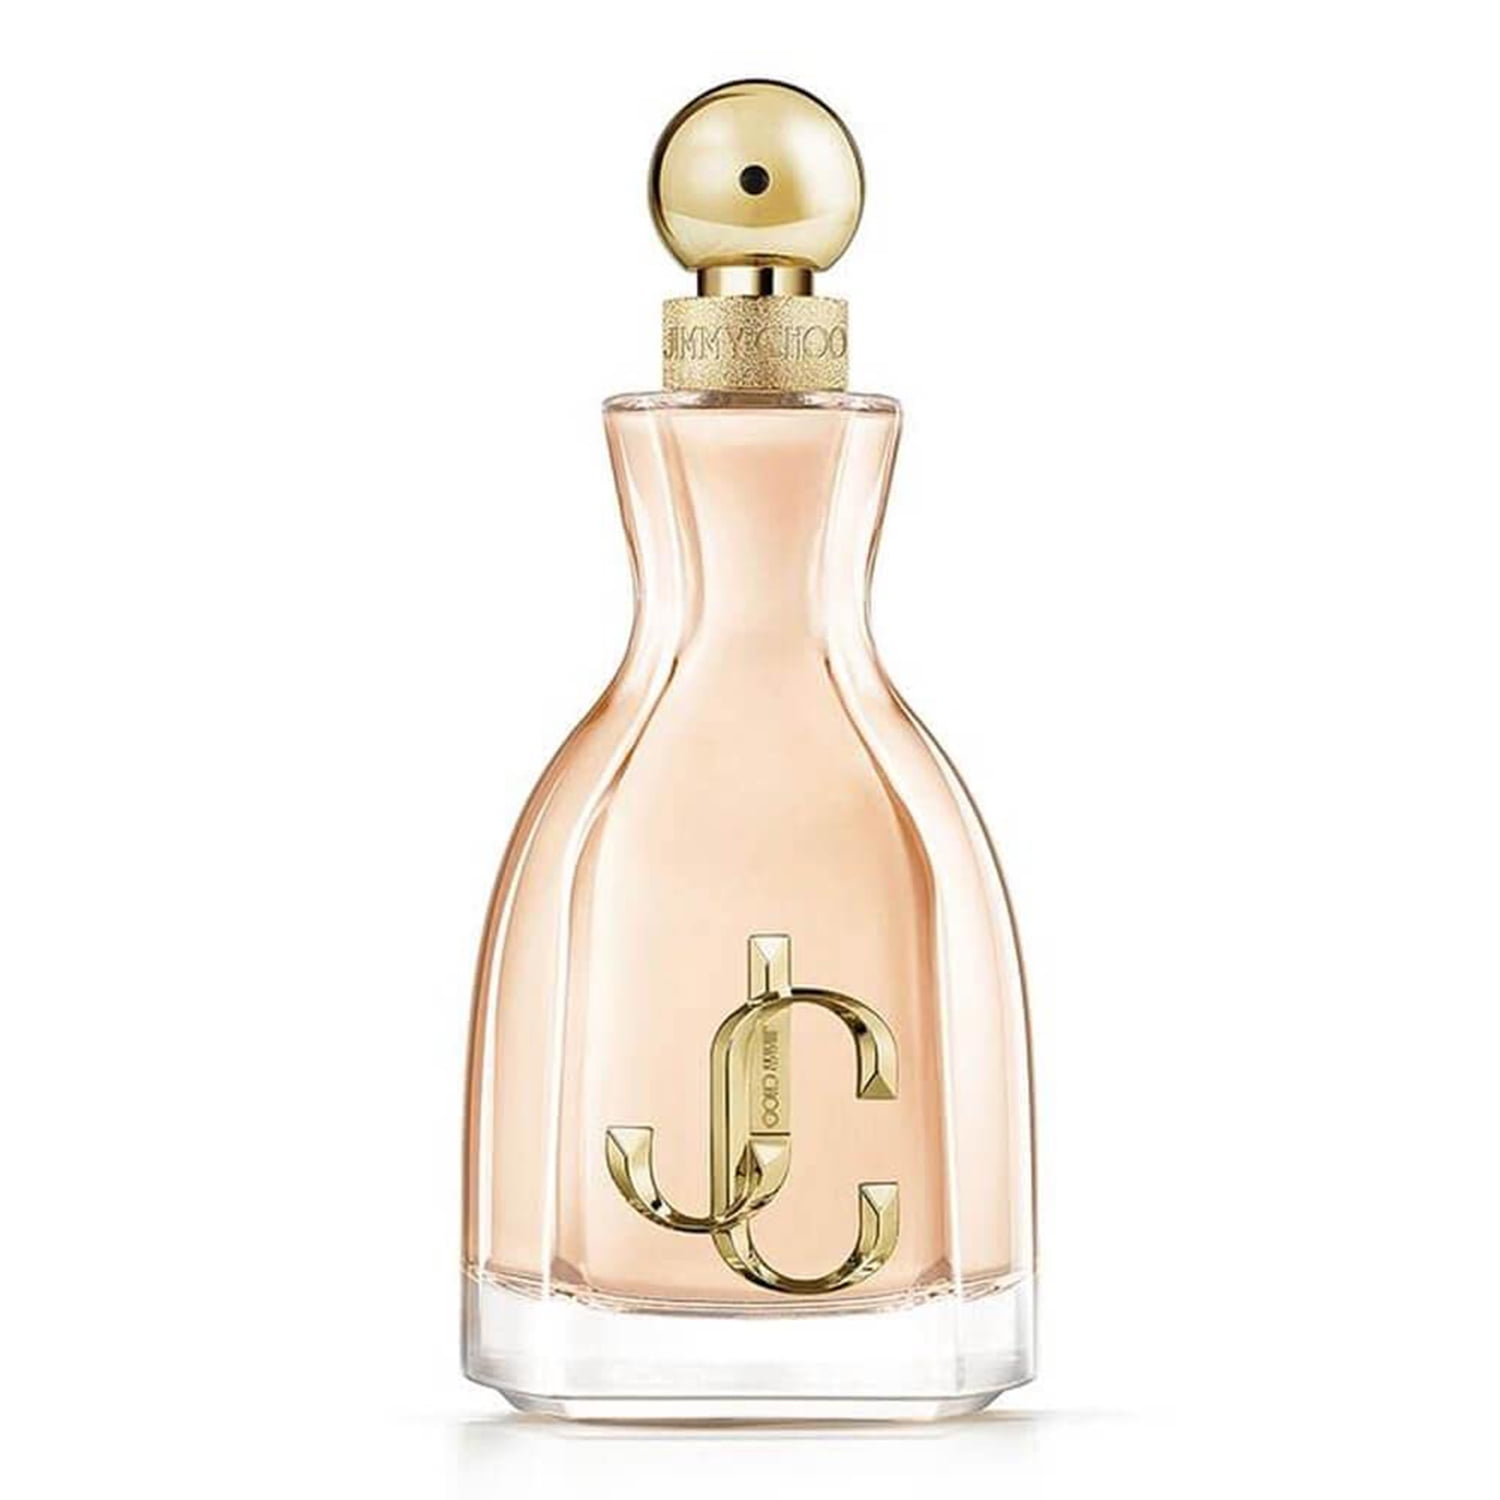 Jimmy Choo Ladies I Want Choo Eau de parfum Body Spray Fragrances, 100 ml / fl. oz -